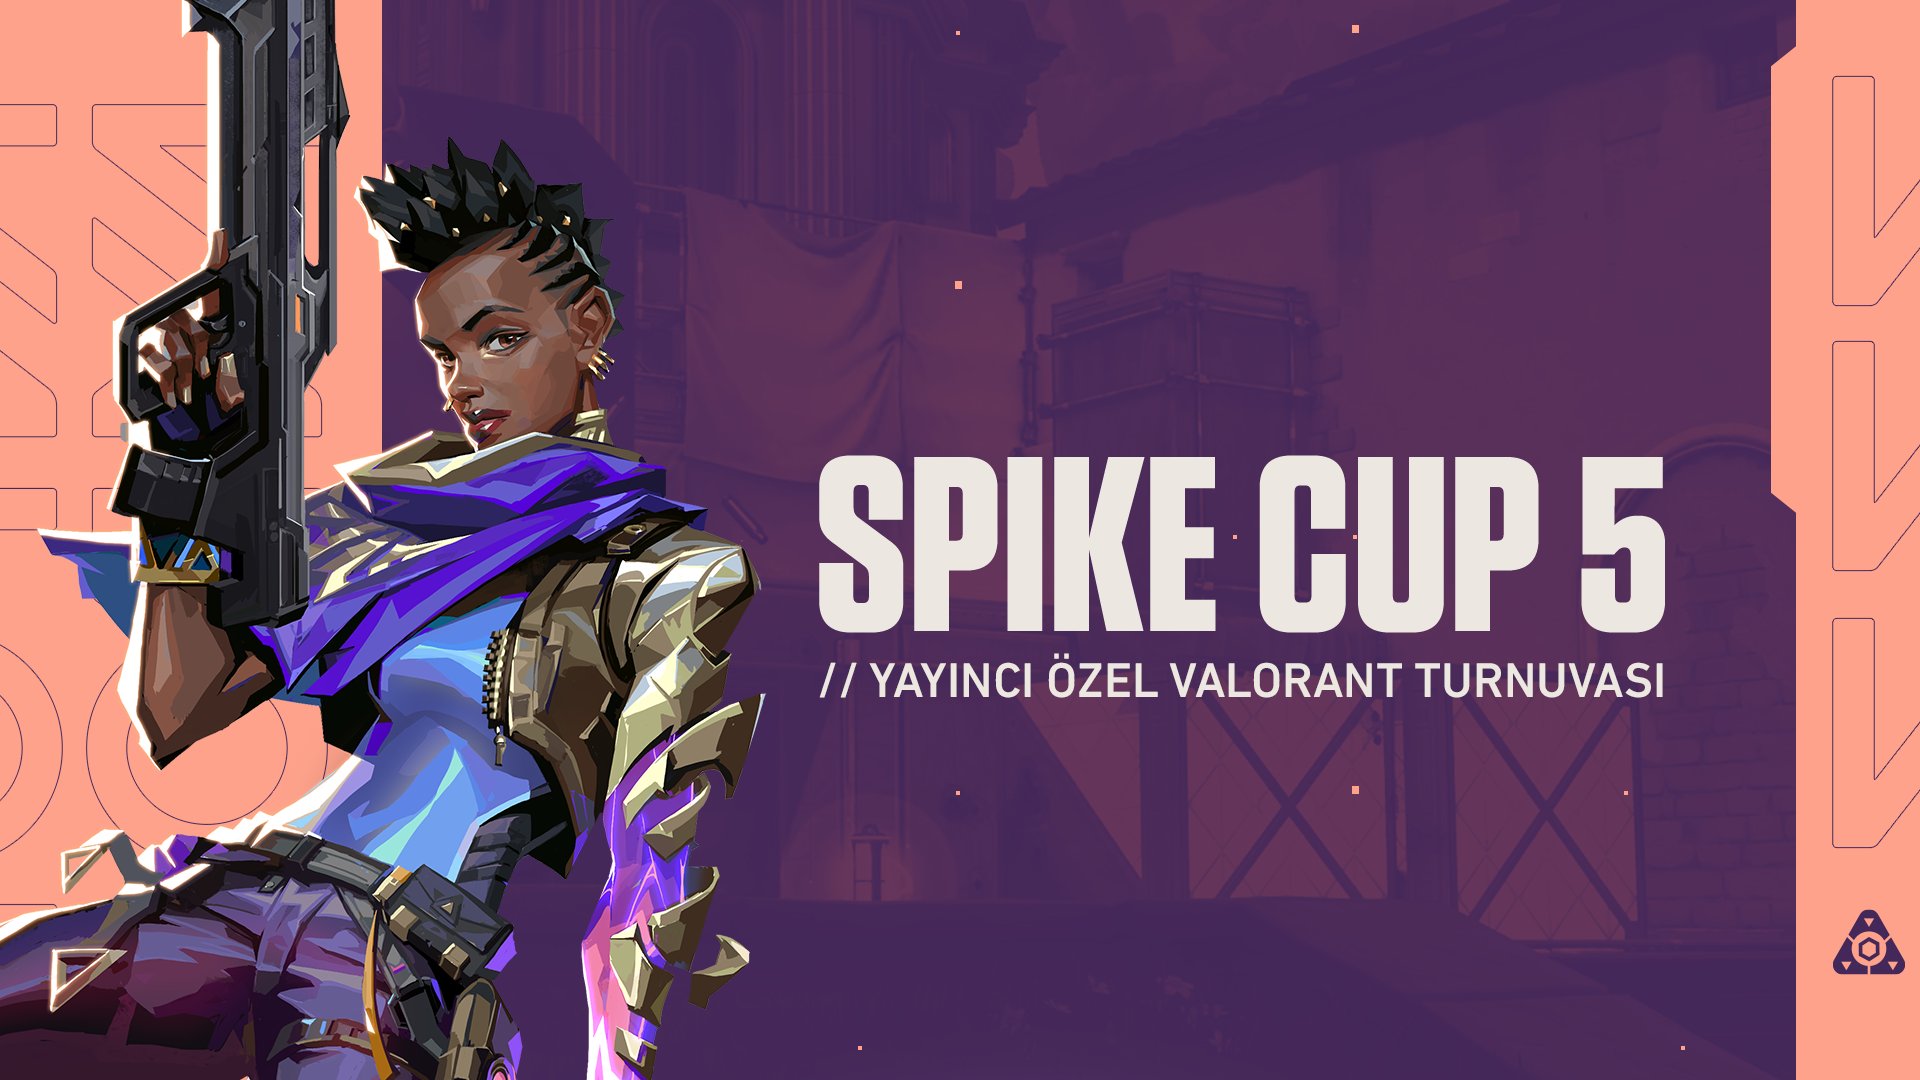 Spike Cup 5 yayıncı özel VALORANT